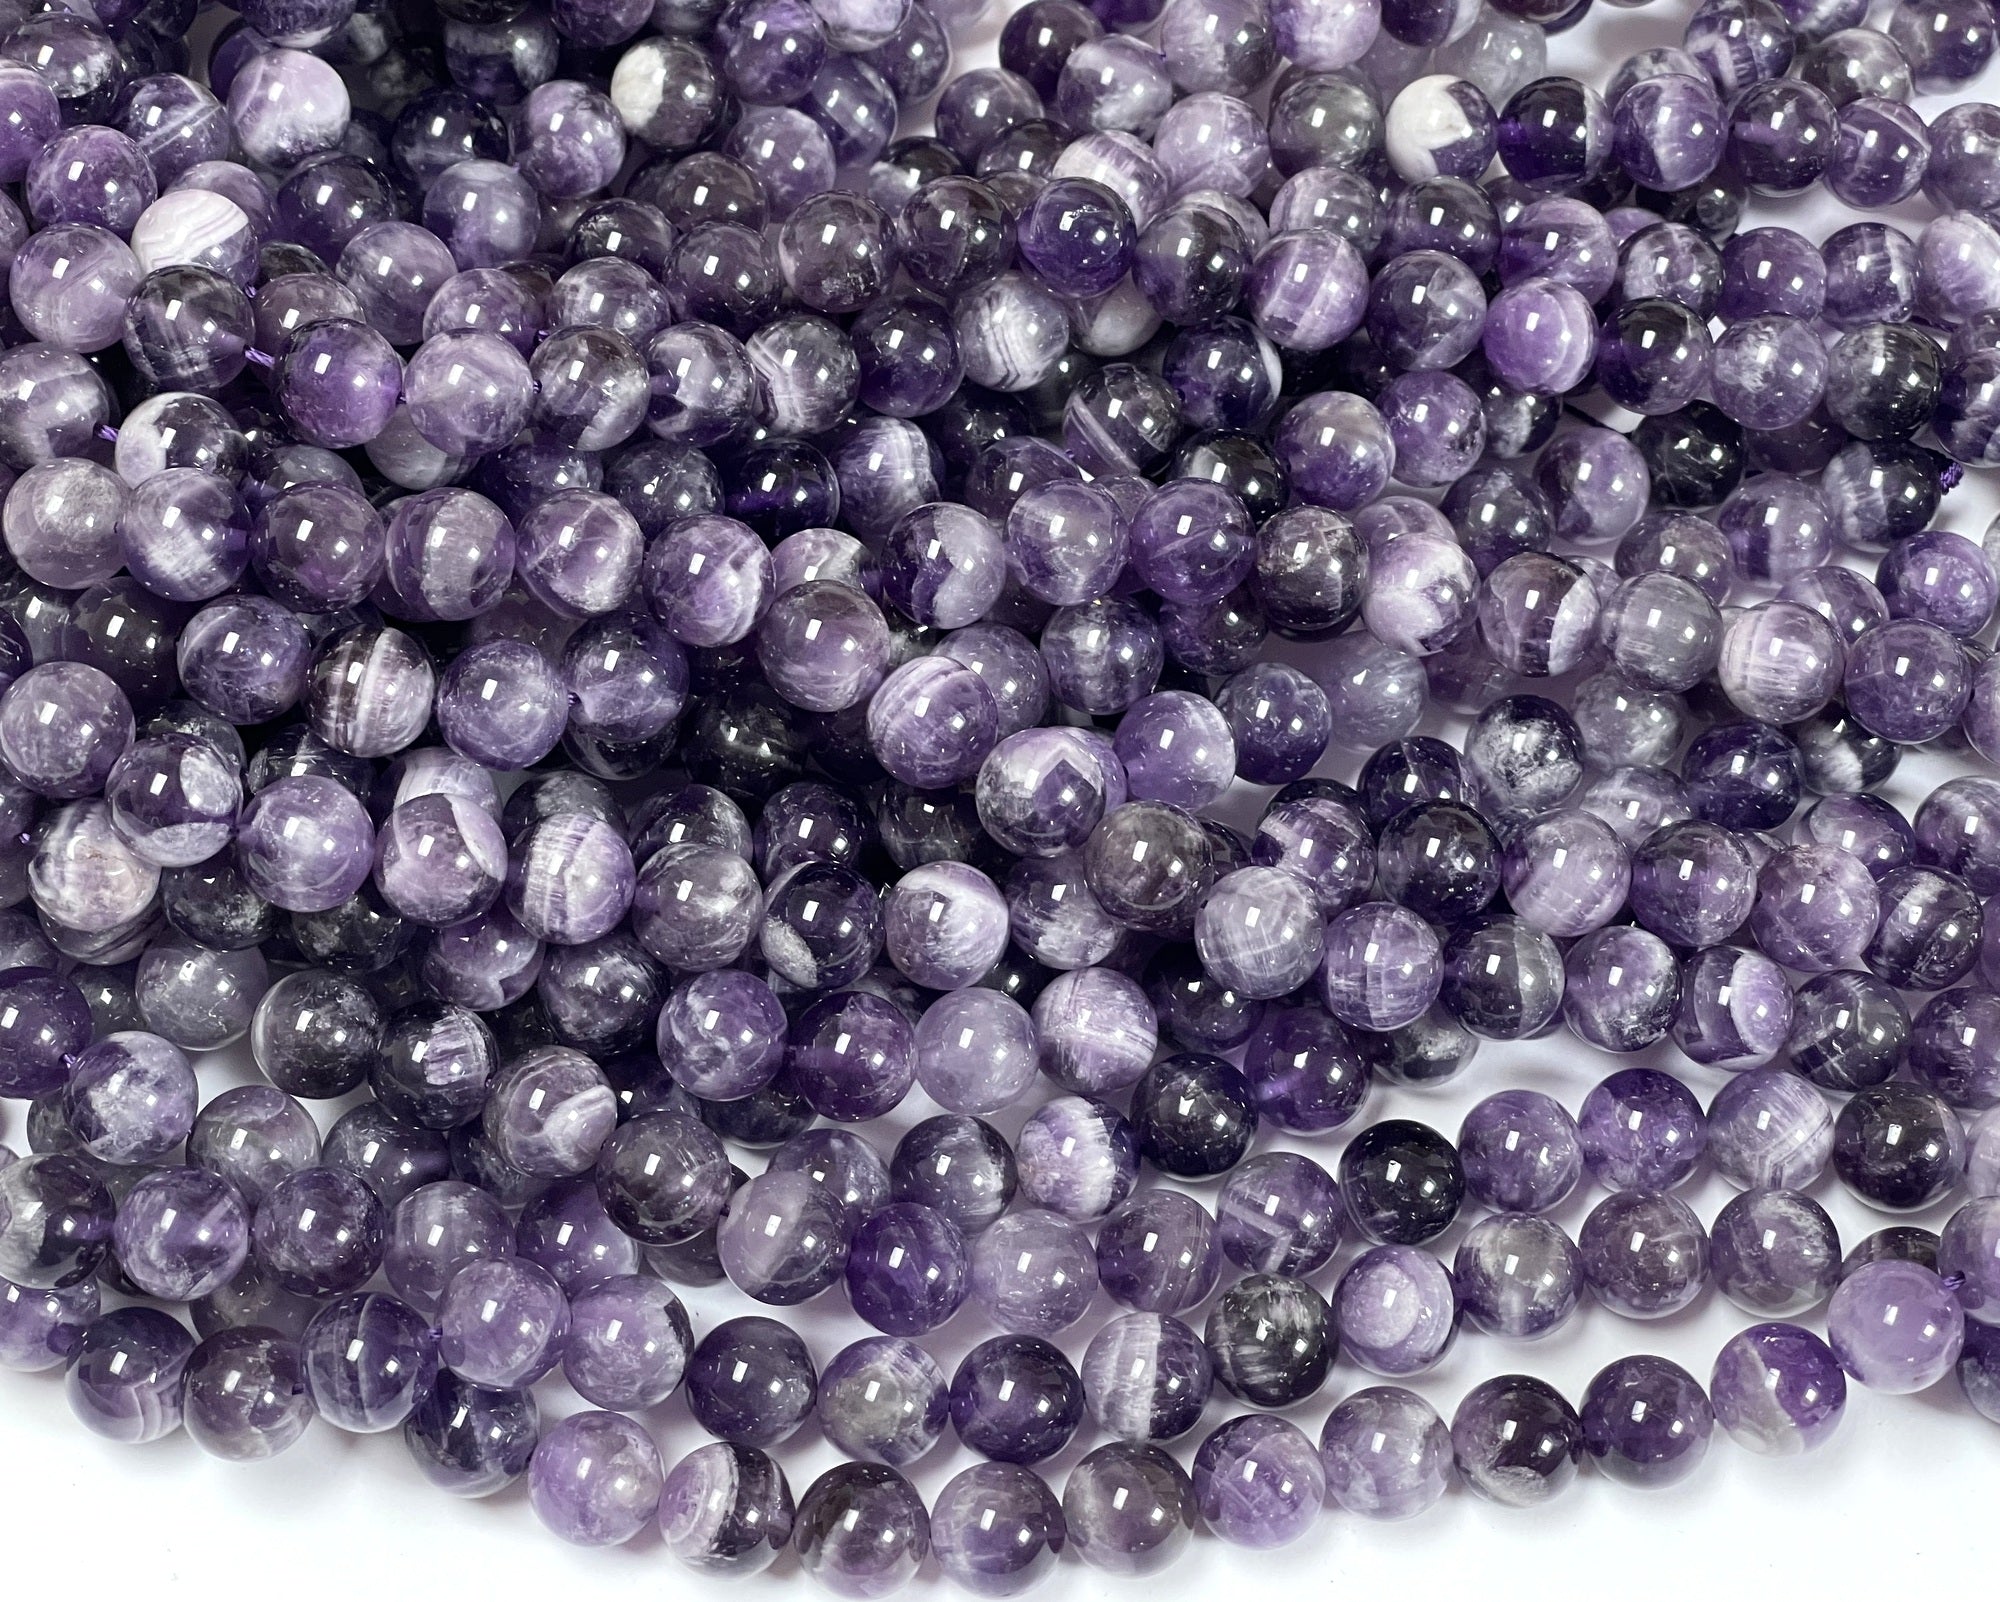 Sage Amethyst 10mm round natural gemstone beads 15" strand